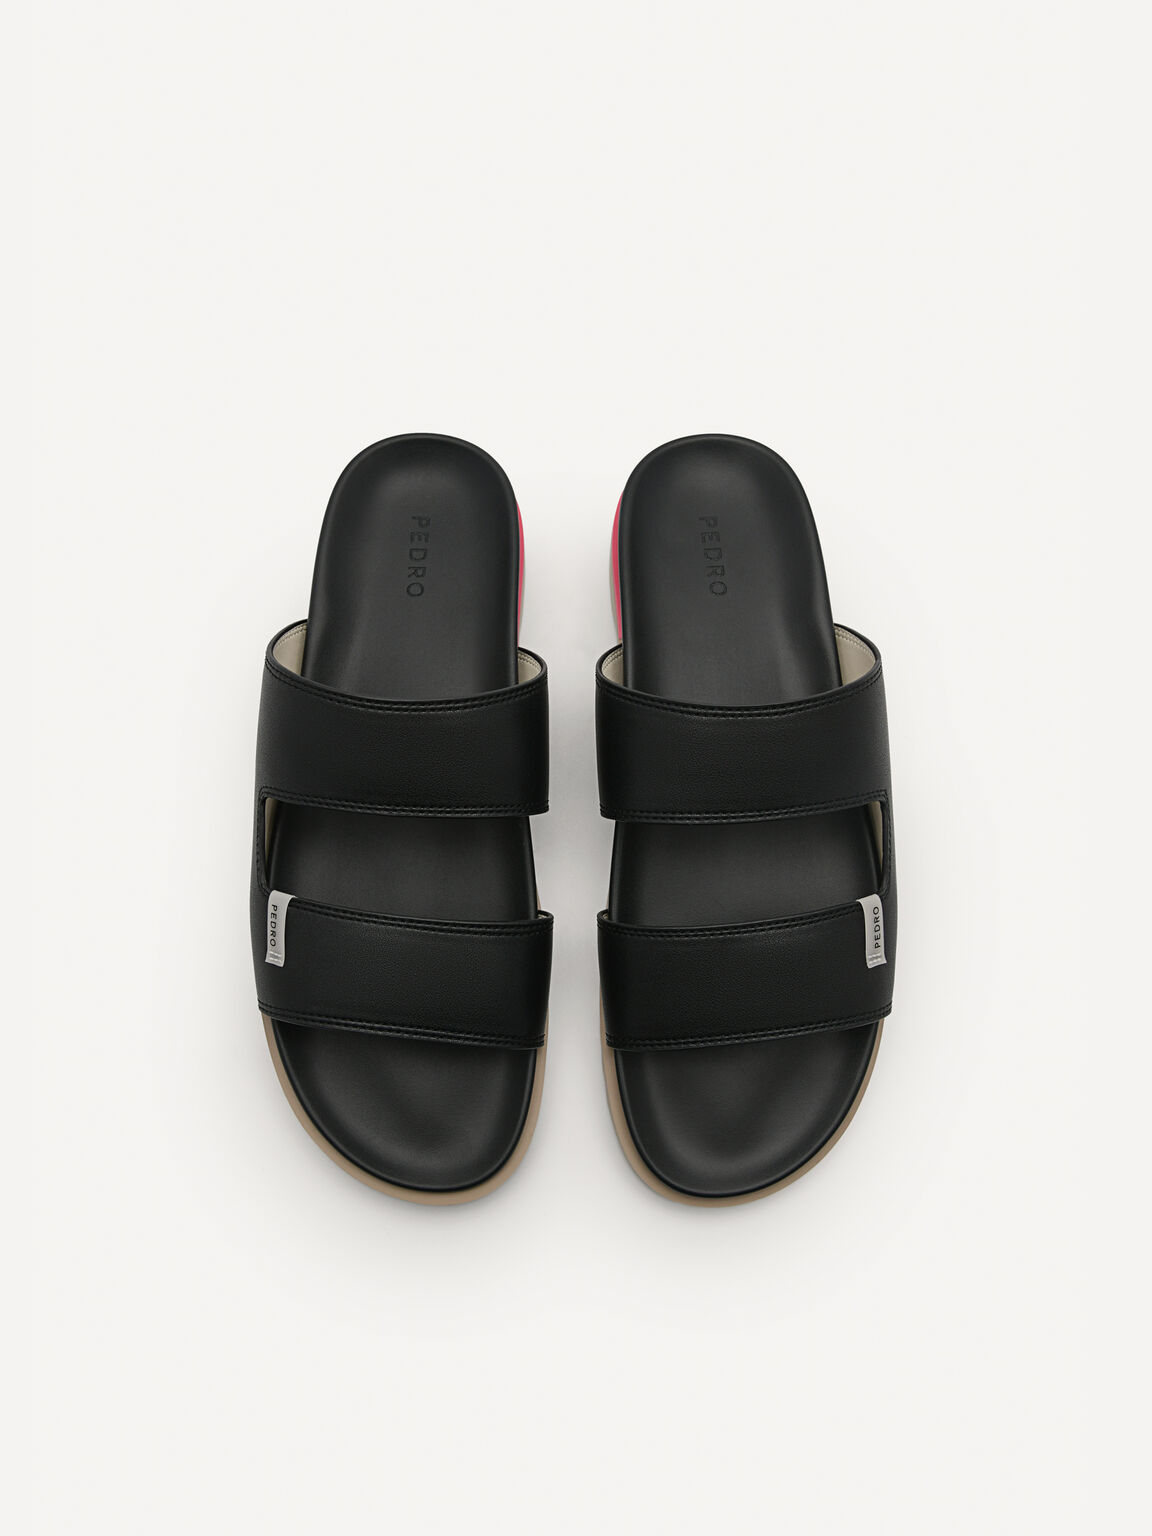 Owen Slide Sandals, Black